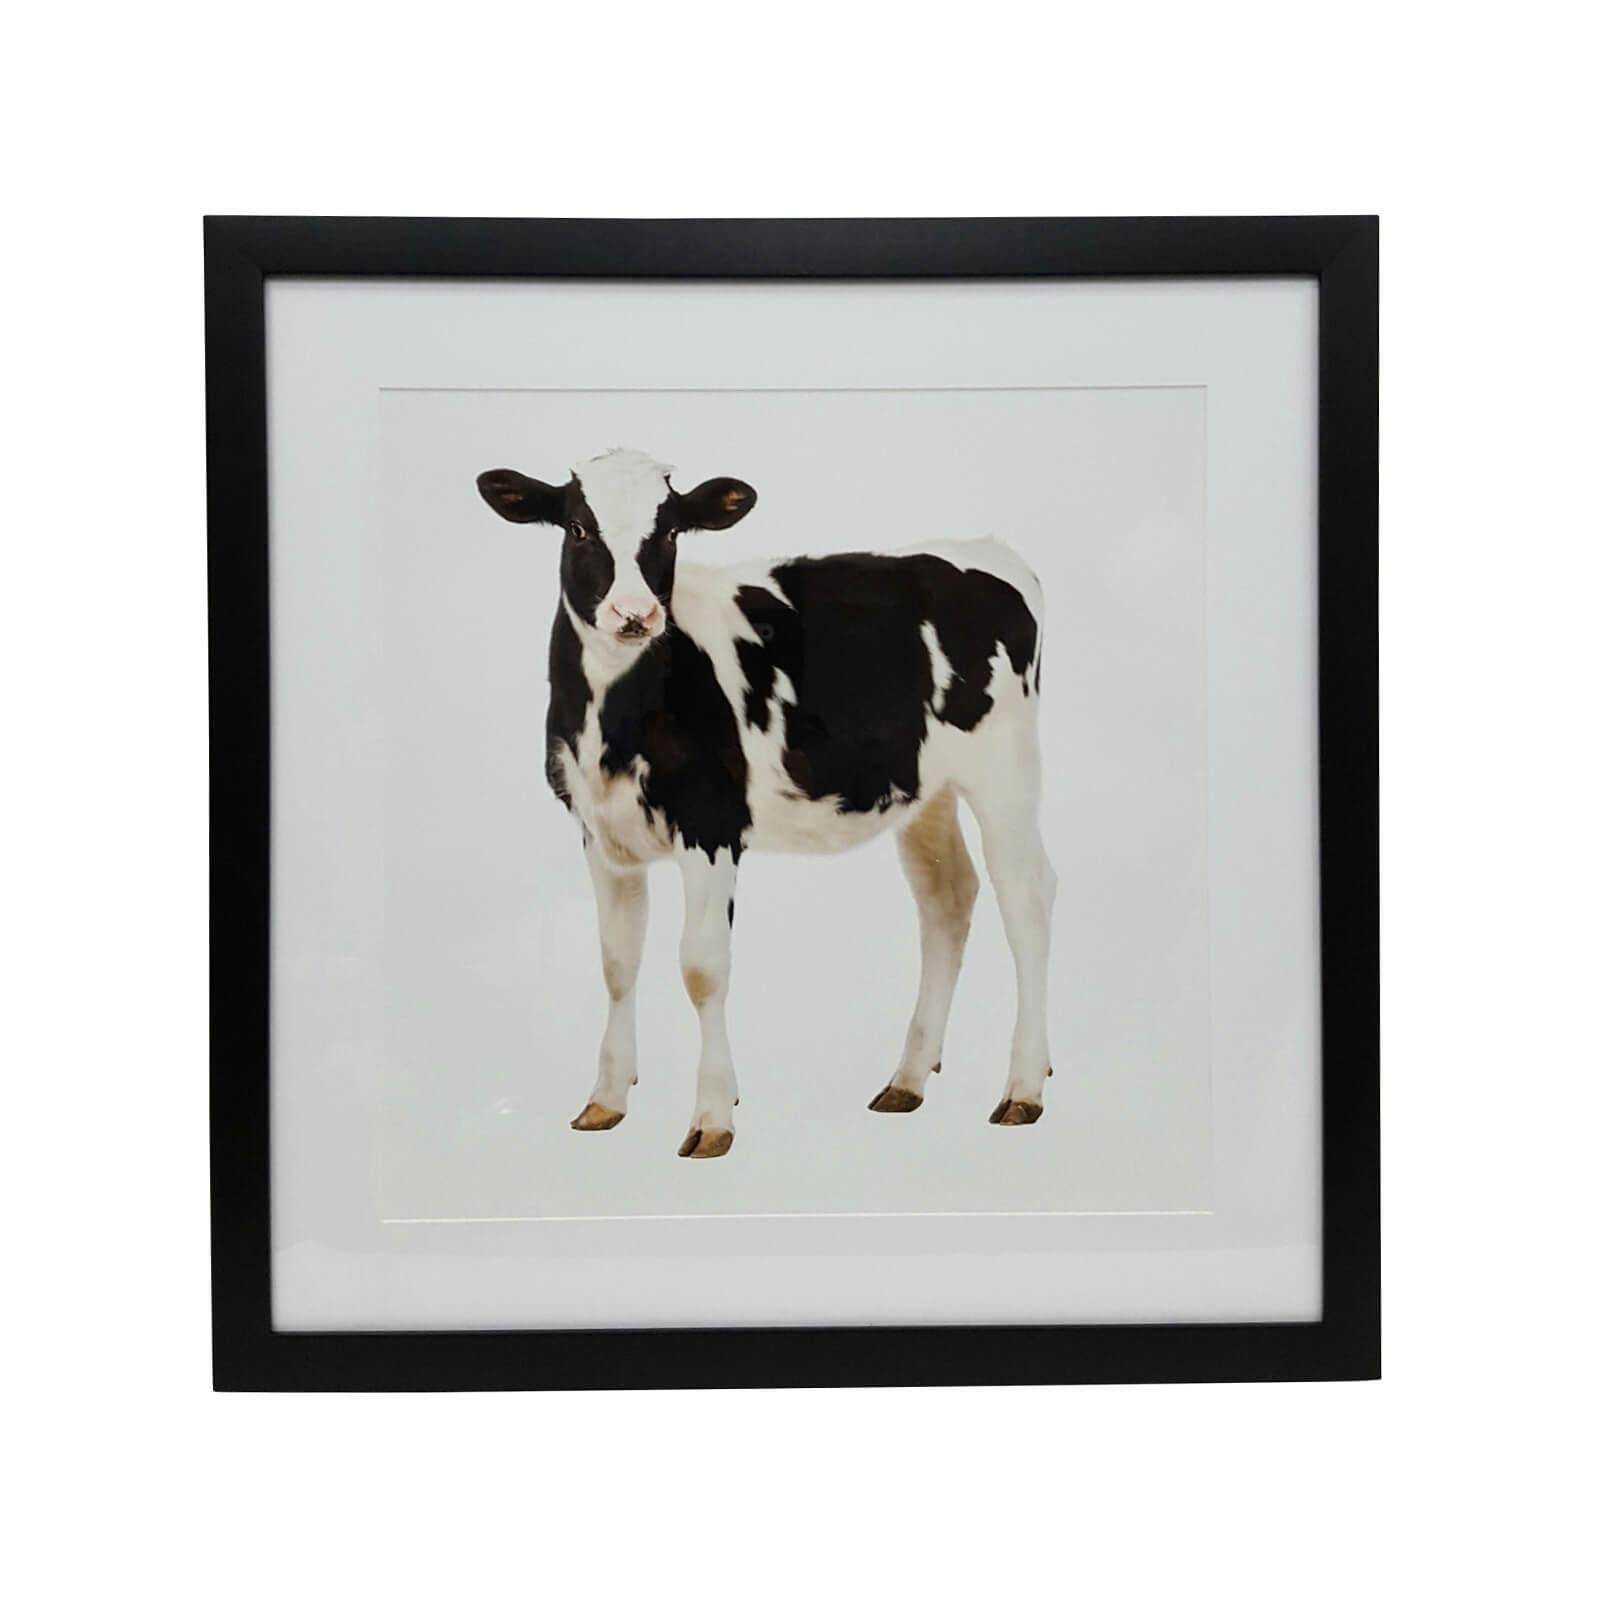 Schöne Kuh Fotografie. Einzigartig gerahmt in schwarz matt mit Plexiglas. Maßgeschneiderte Konfigurationen sind auf Anfrage erhältlich